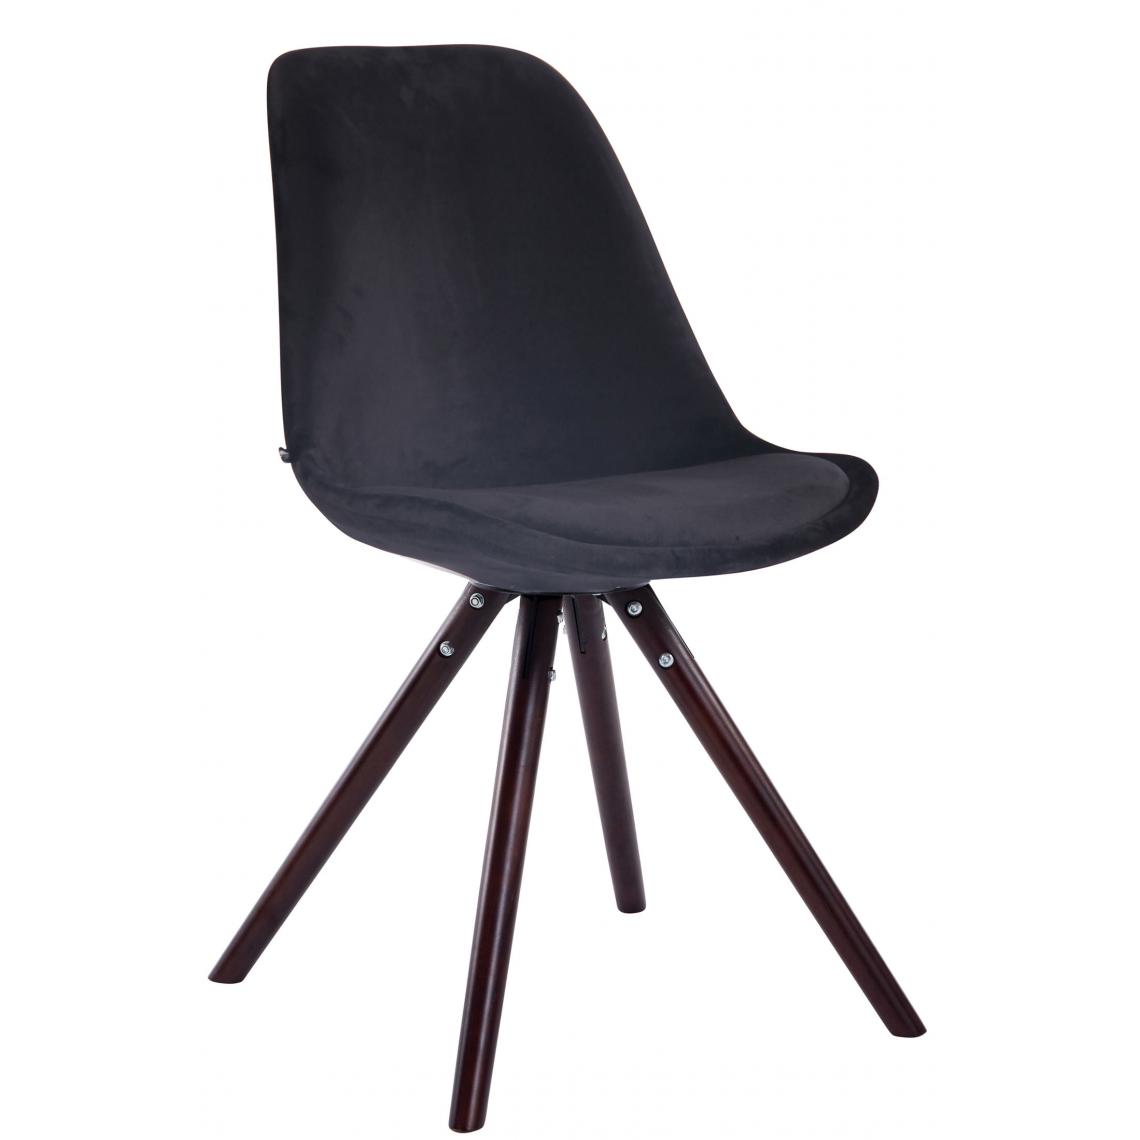 Icaverne - Admirable Chaise visiteur collection Katmandou velours rond cappuccino (chêne) couleur noir - Chaises